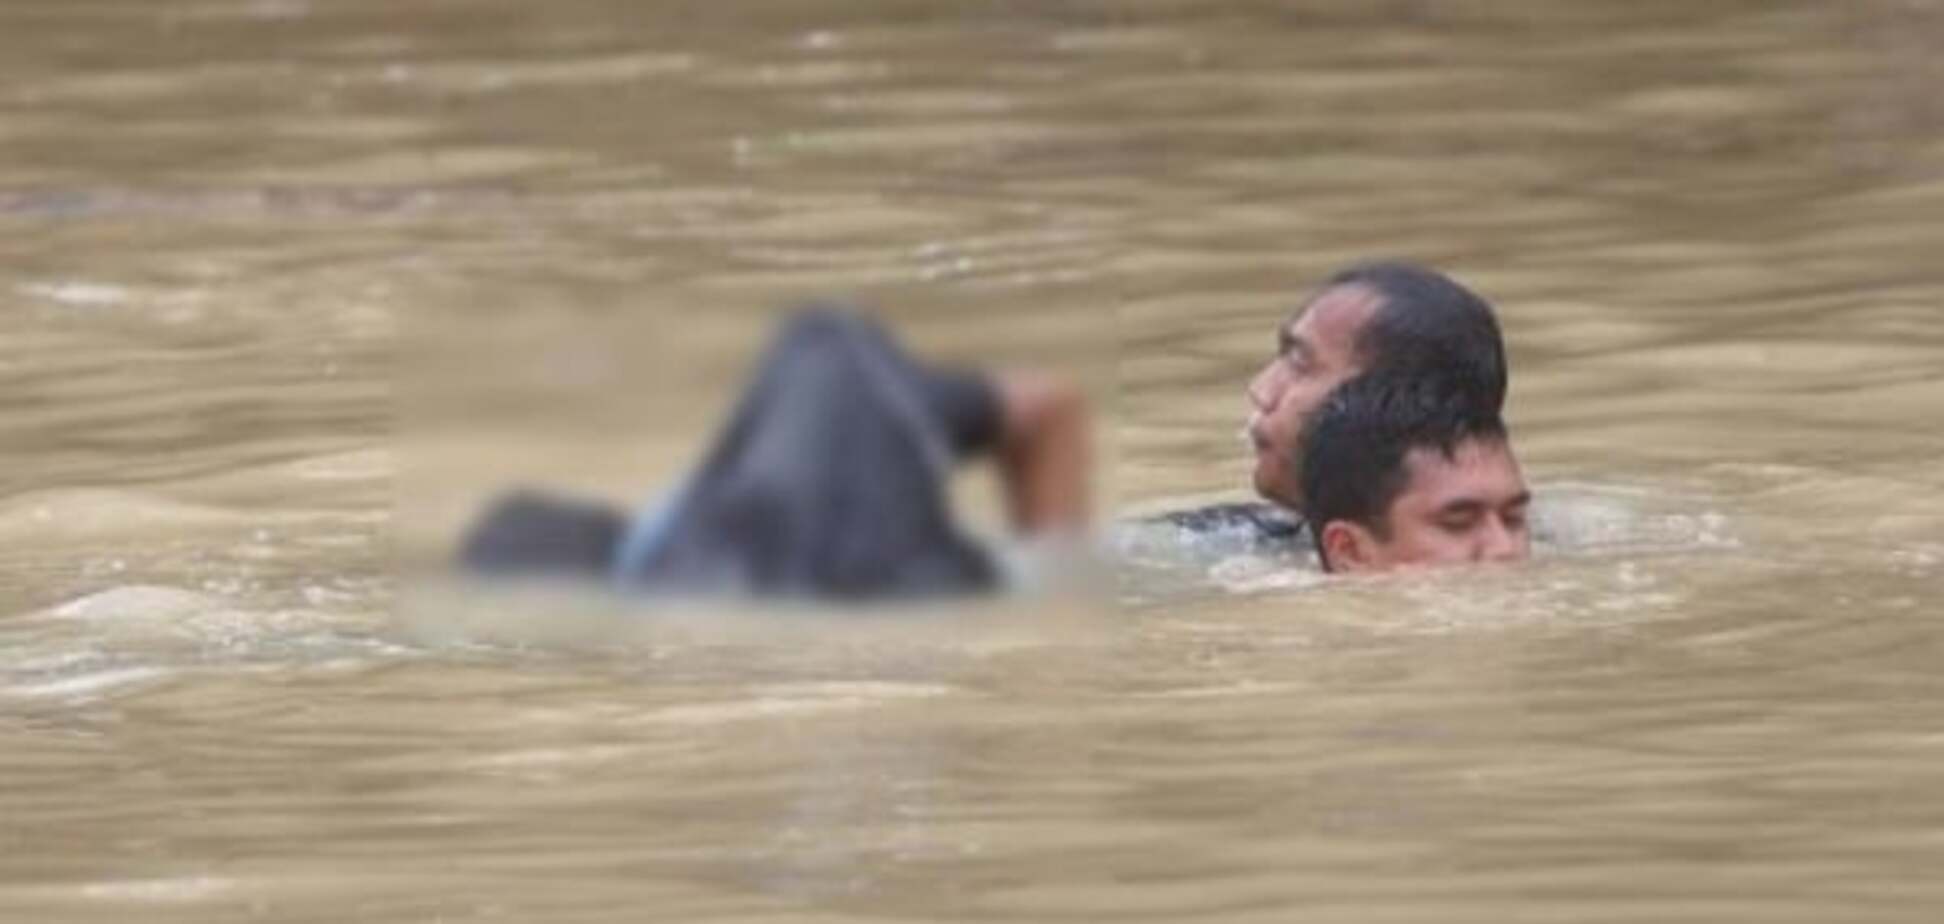 Из-за масштабного наводнения в Малайзии эвакуировали более 4 тысяч человек. Опубликованы фото